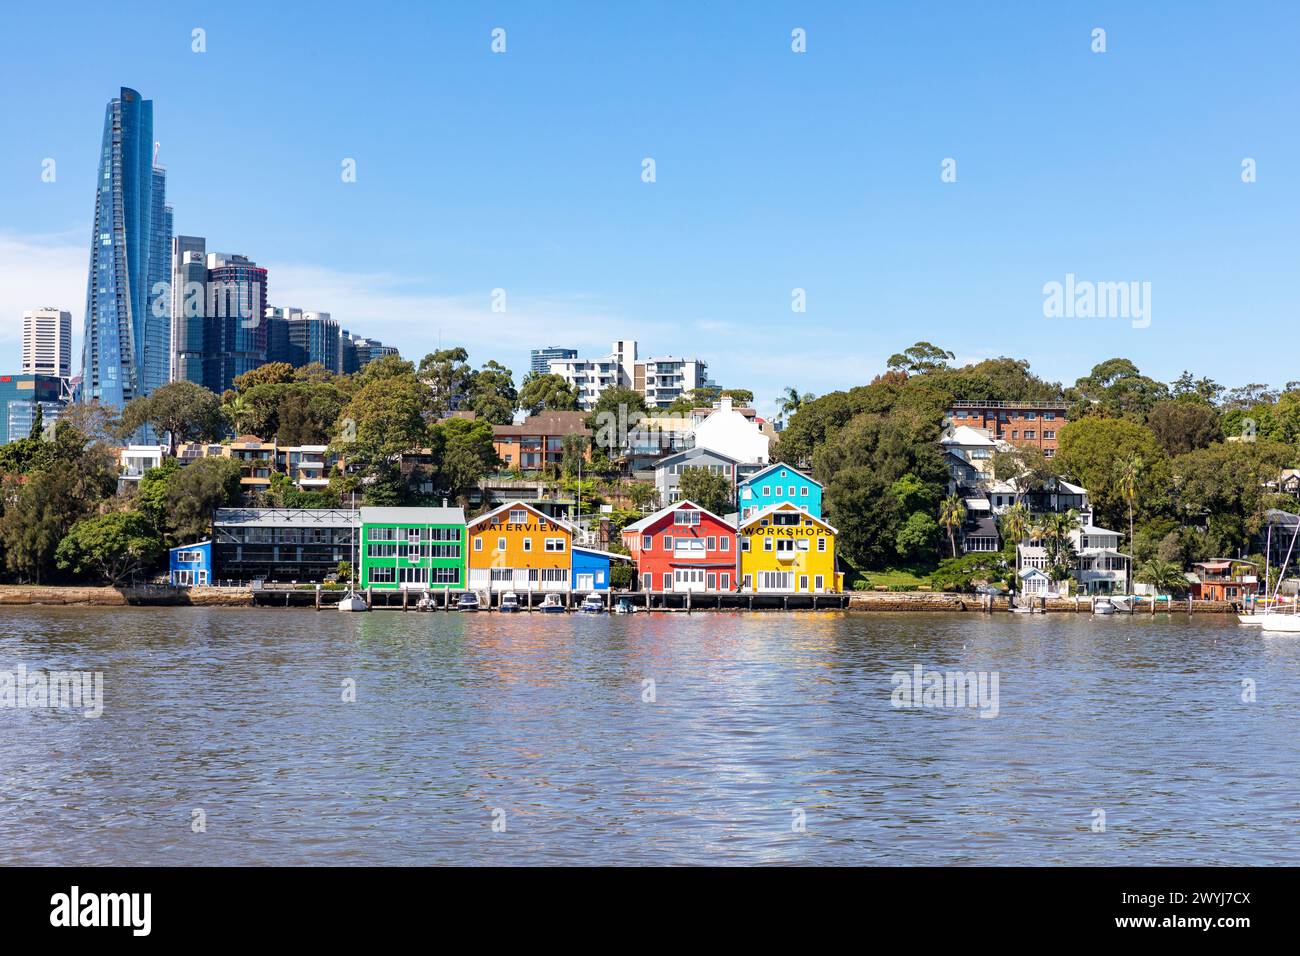 Gli edifici colorati del molo Waterview sulla penisola di Balmain con il grattacielo Crown Casino e gli alti edifici di Sydney in lontananza Foto Stock